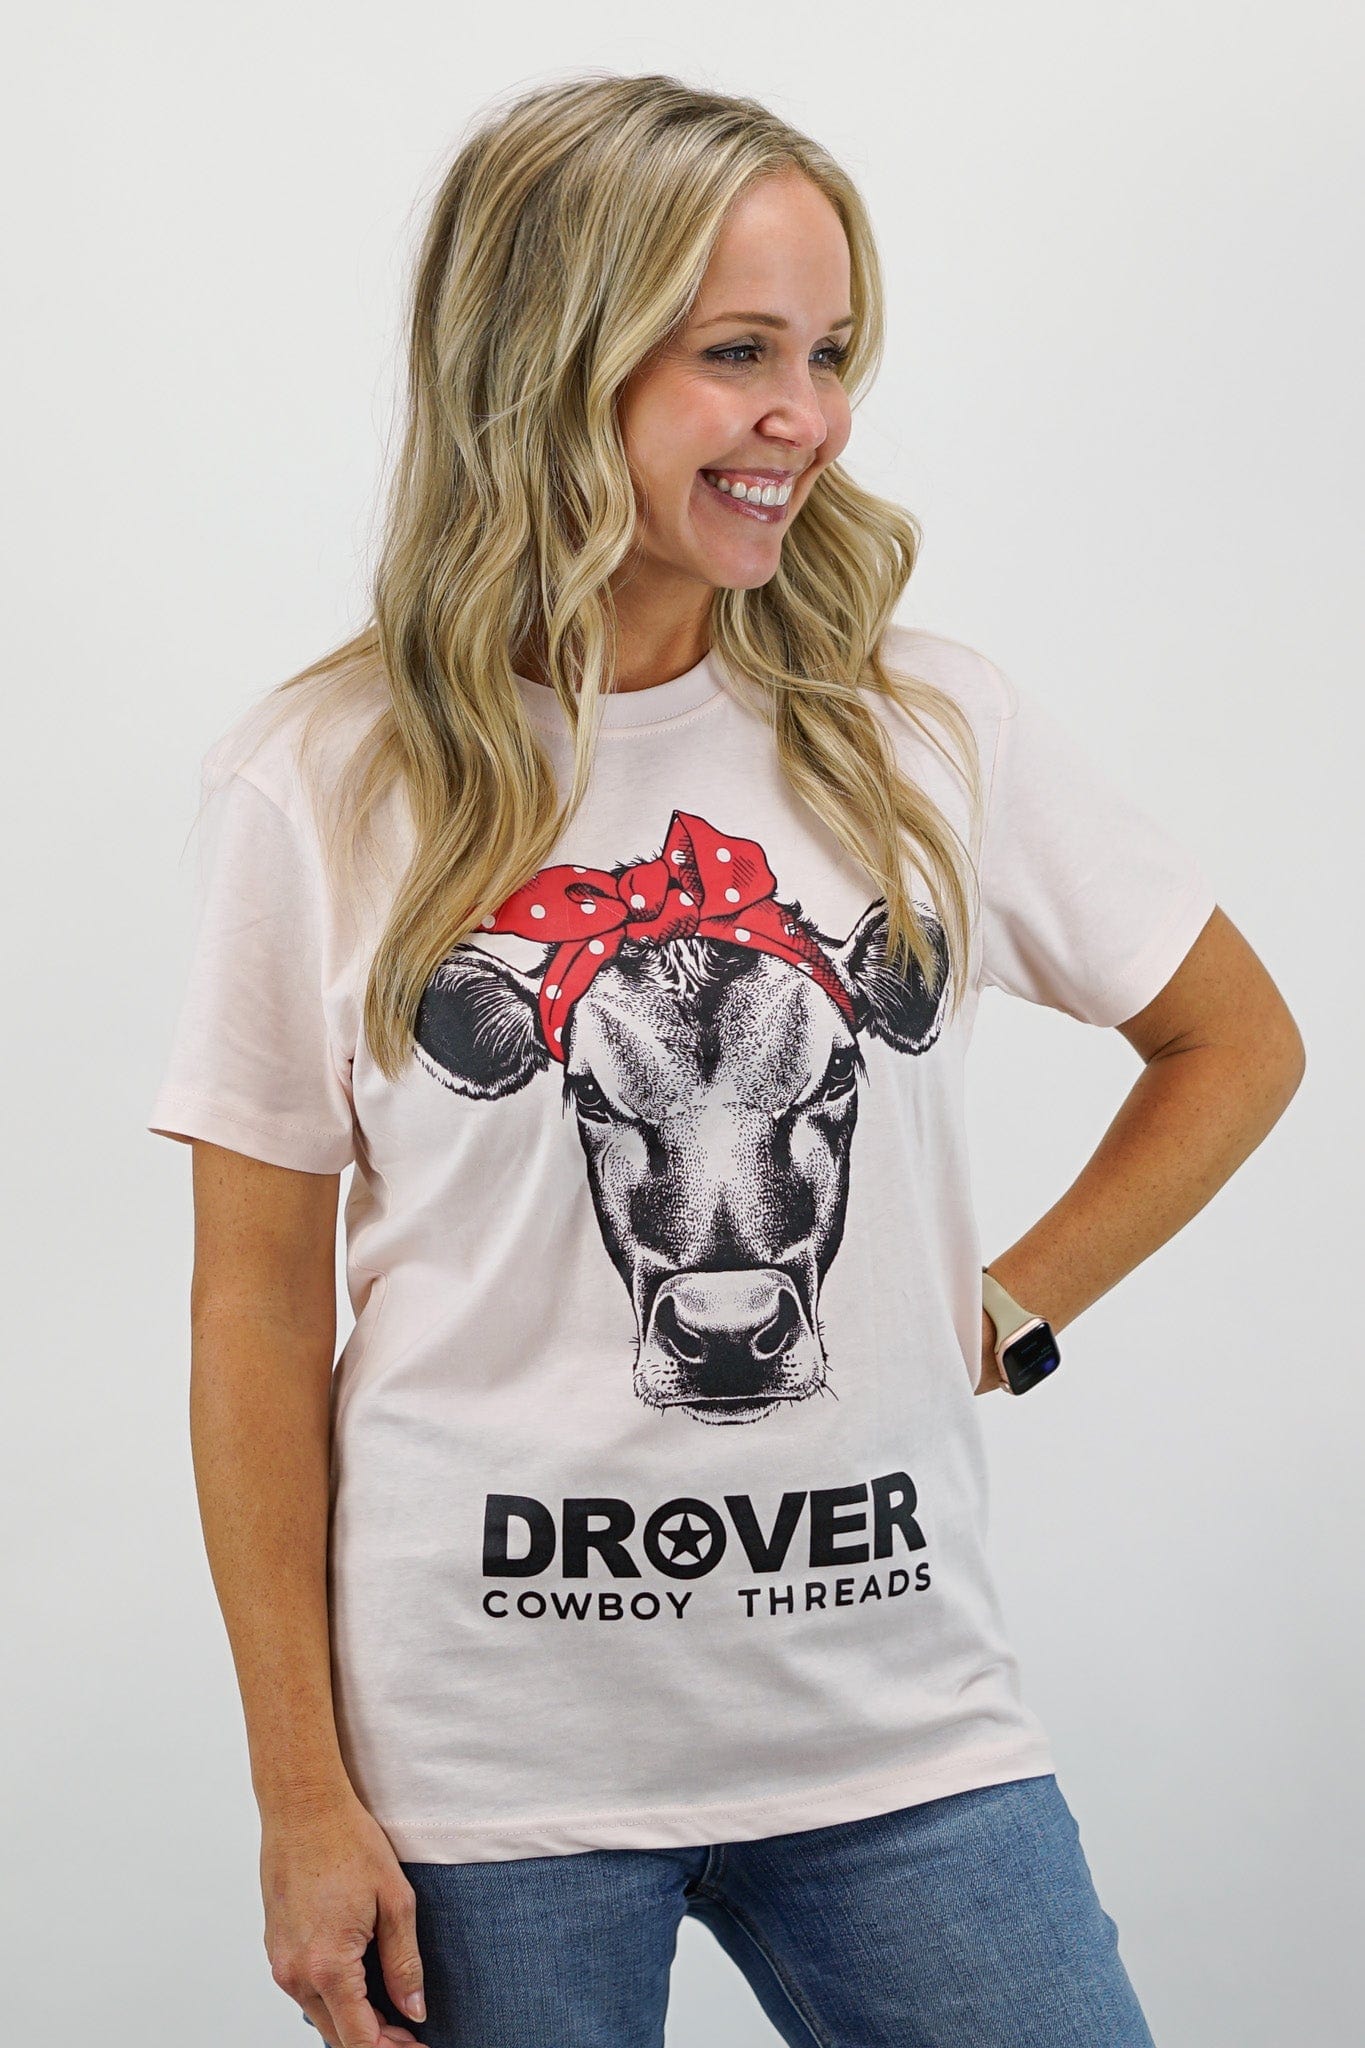 Drover Cowboy Threads Shirts T-Shirt - Cute Heifer Tee - Light Pink